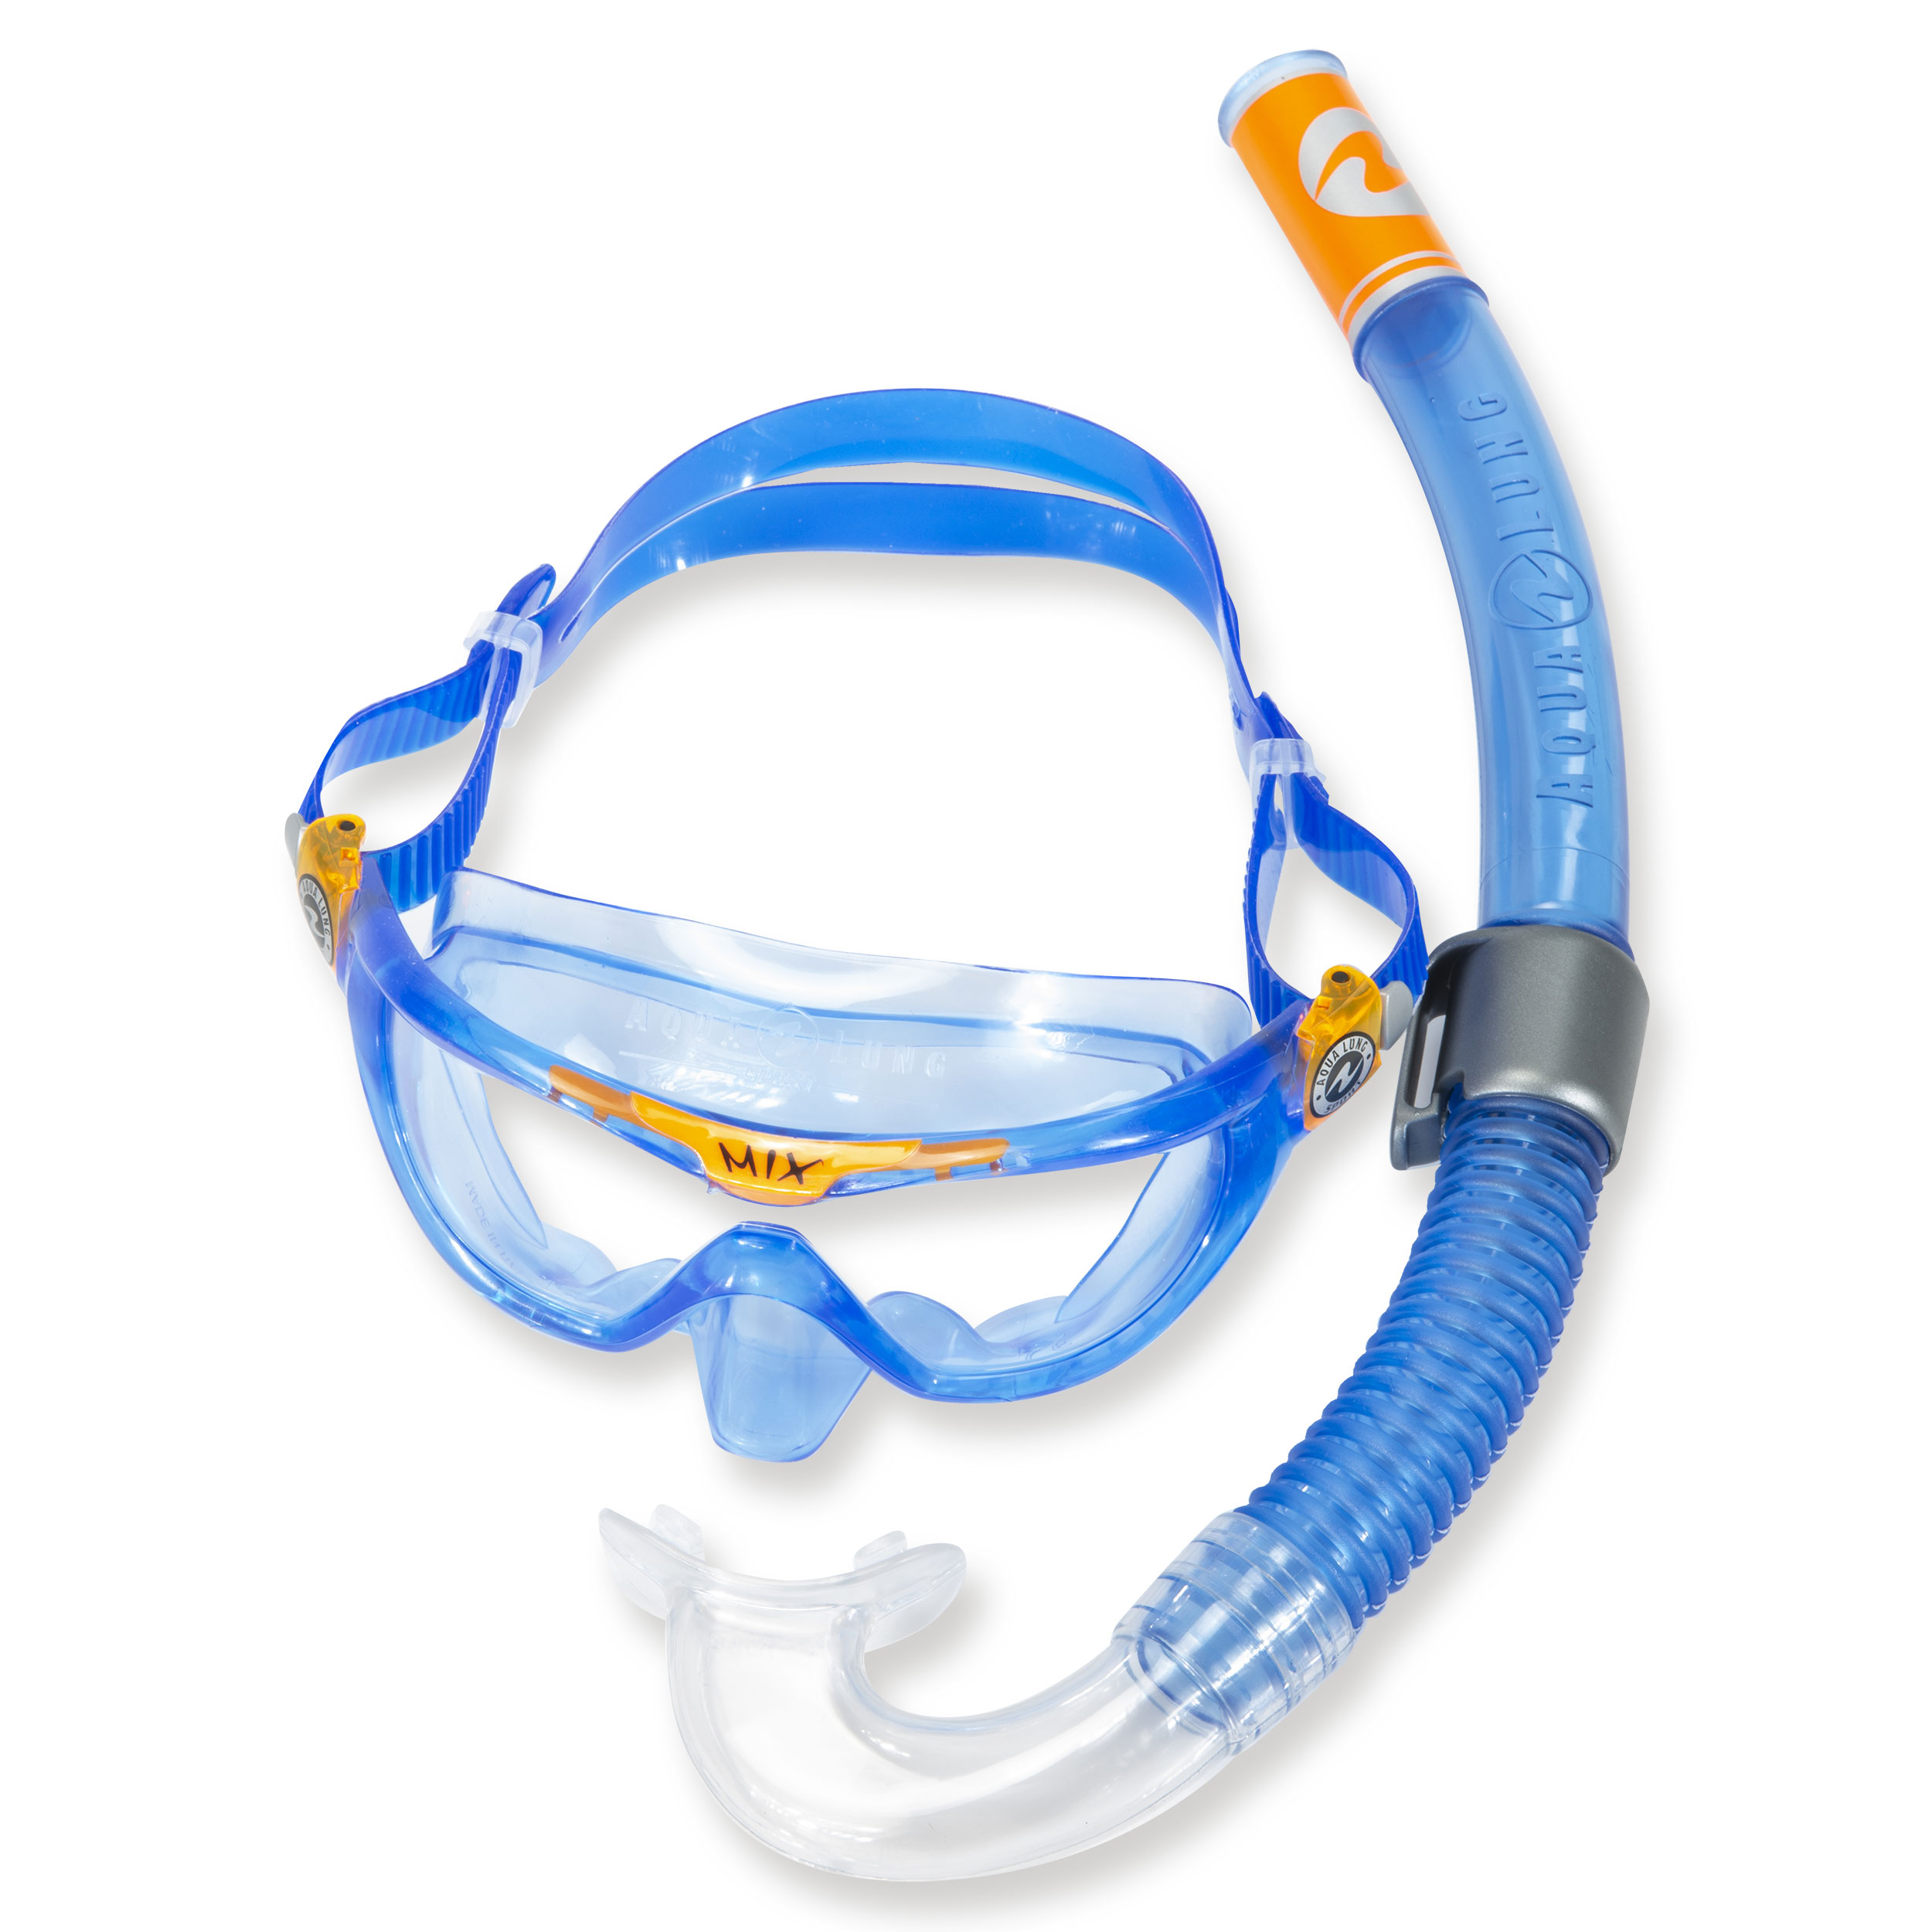 NEU Aqualung Reef Schnorchel Maske Set für Kinder / Taucherbrille Set blau 